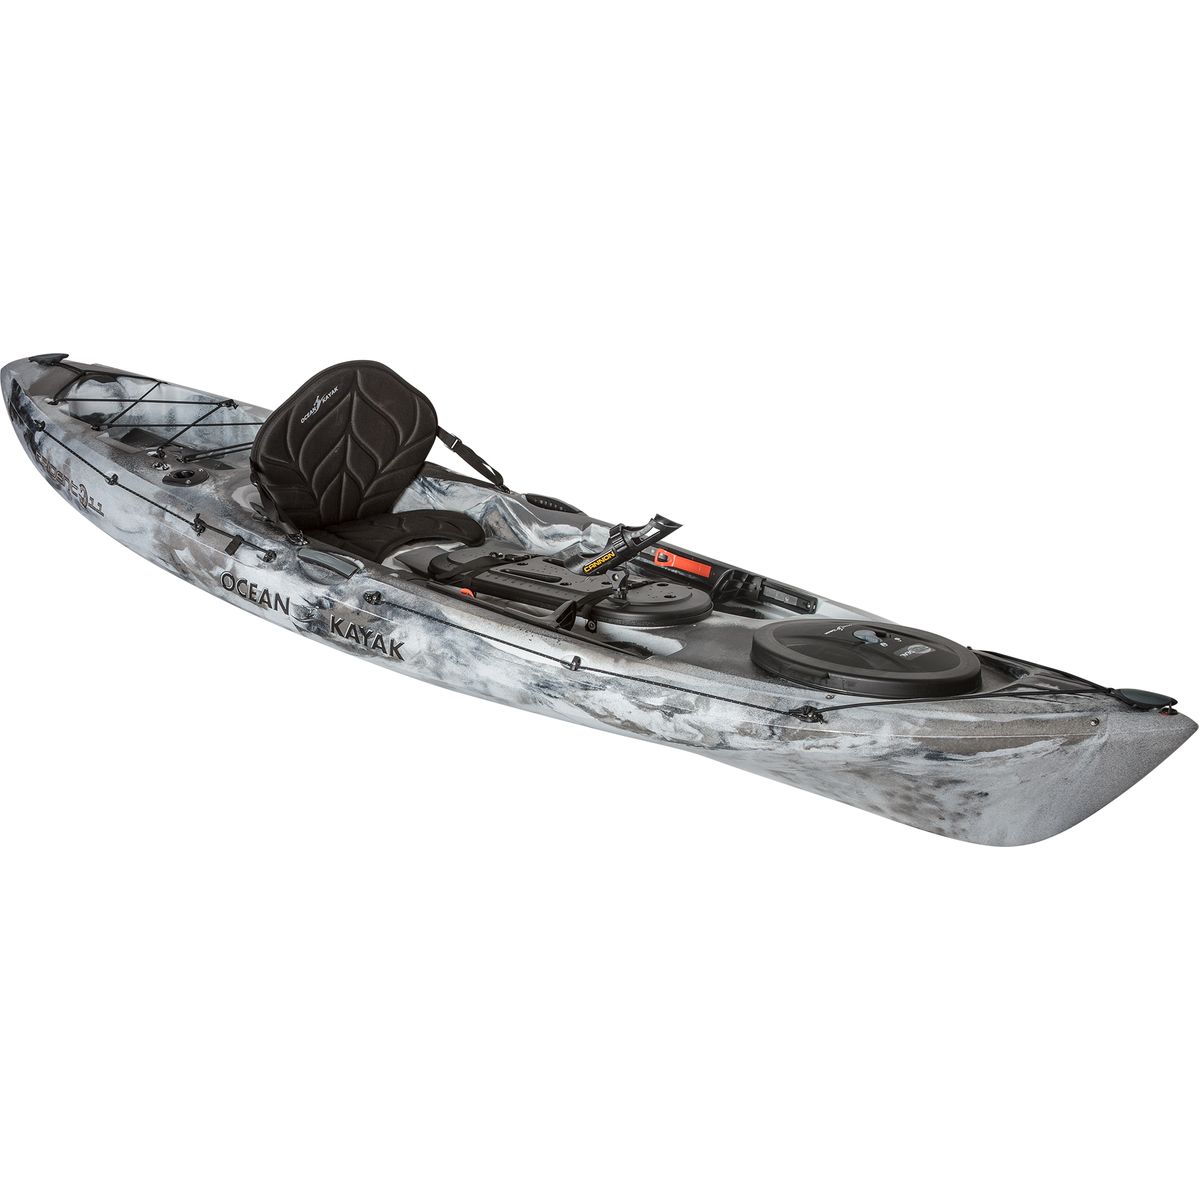 Color:Urban Camo:Ocean Kayak Trident 11 Angler Kayak - Sit-On-Top